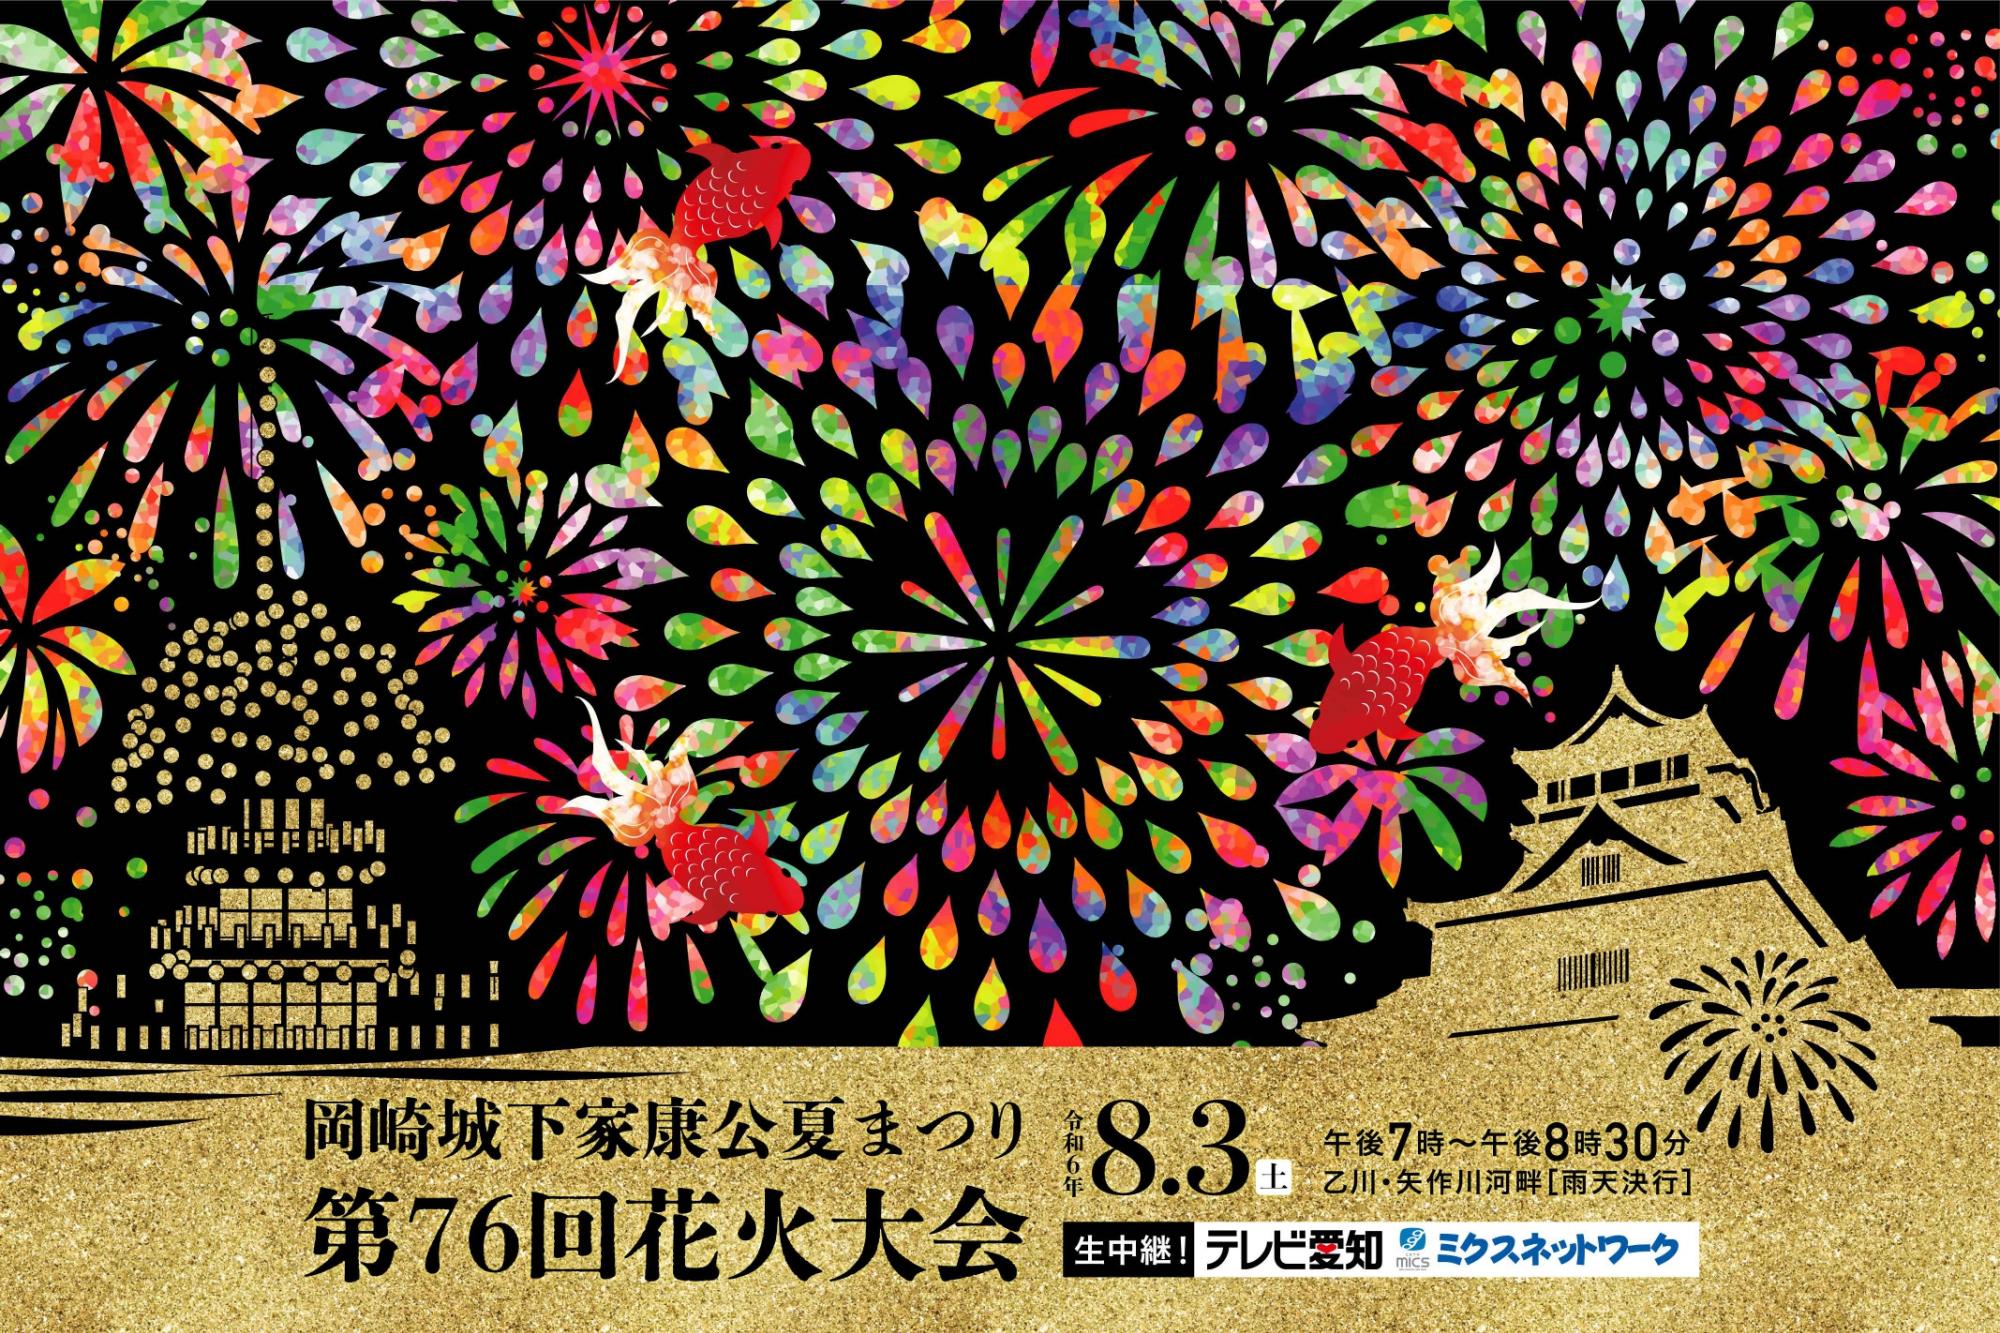 「岡崎城下家康公夏まつり第76回花火大会」有料観覧席の販売についてお知らせいたします